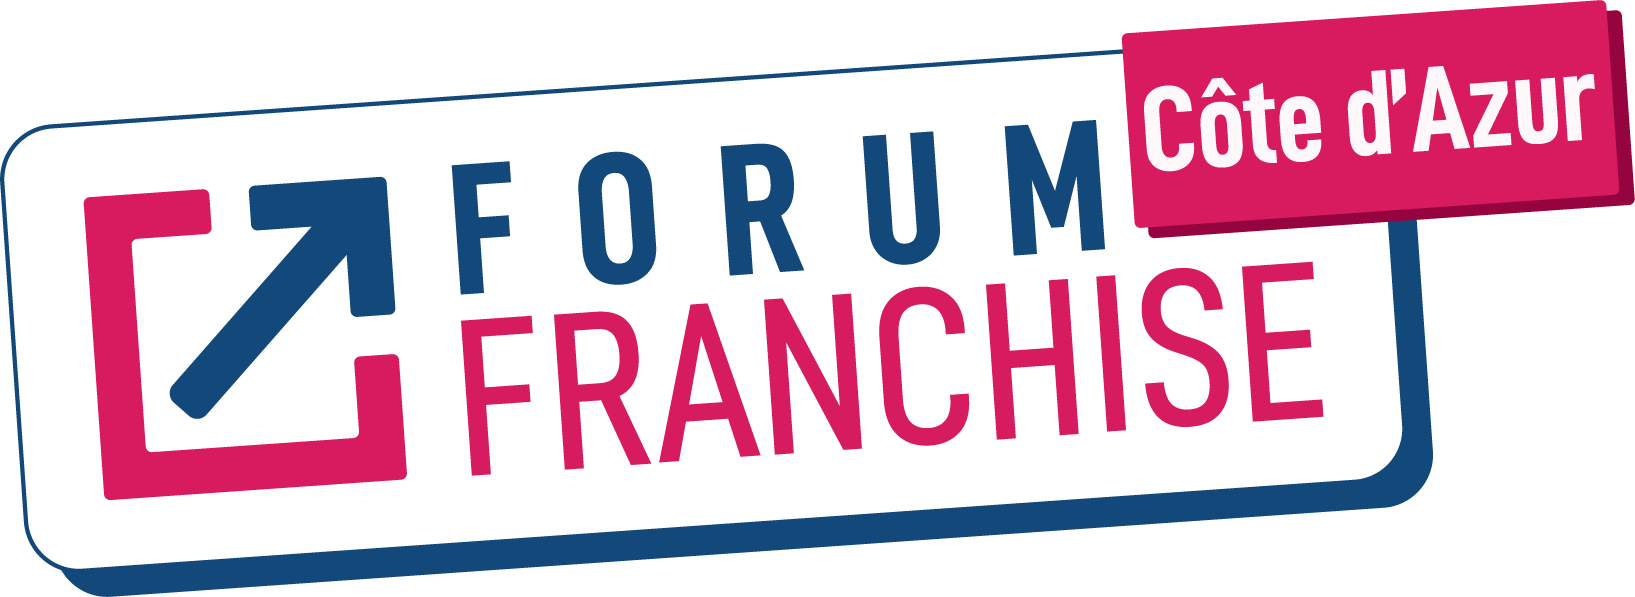 Forum Franchise Côte d'Azur